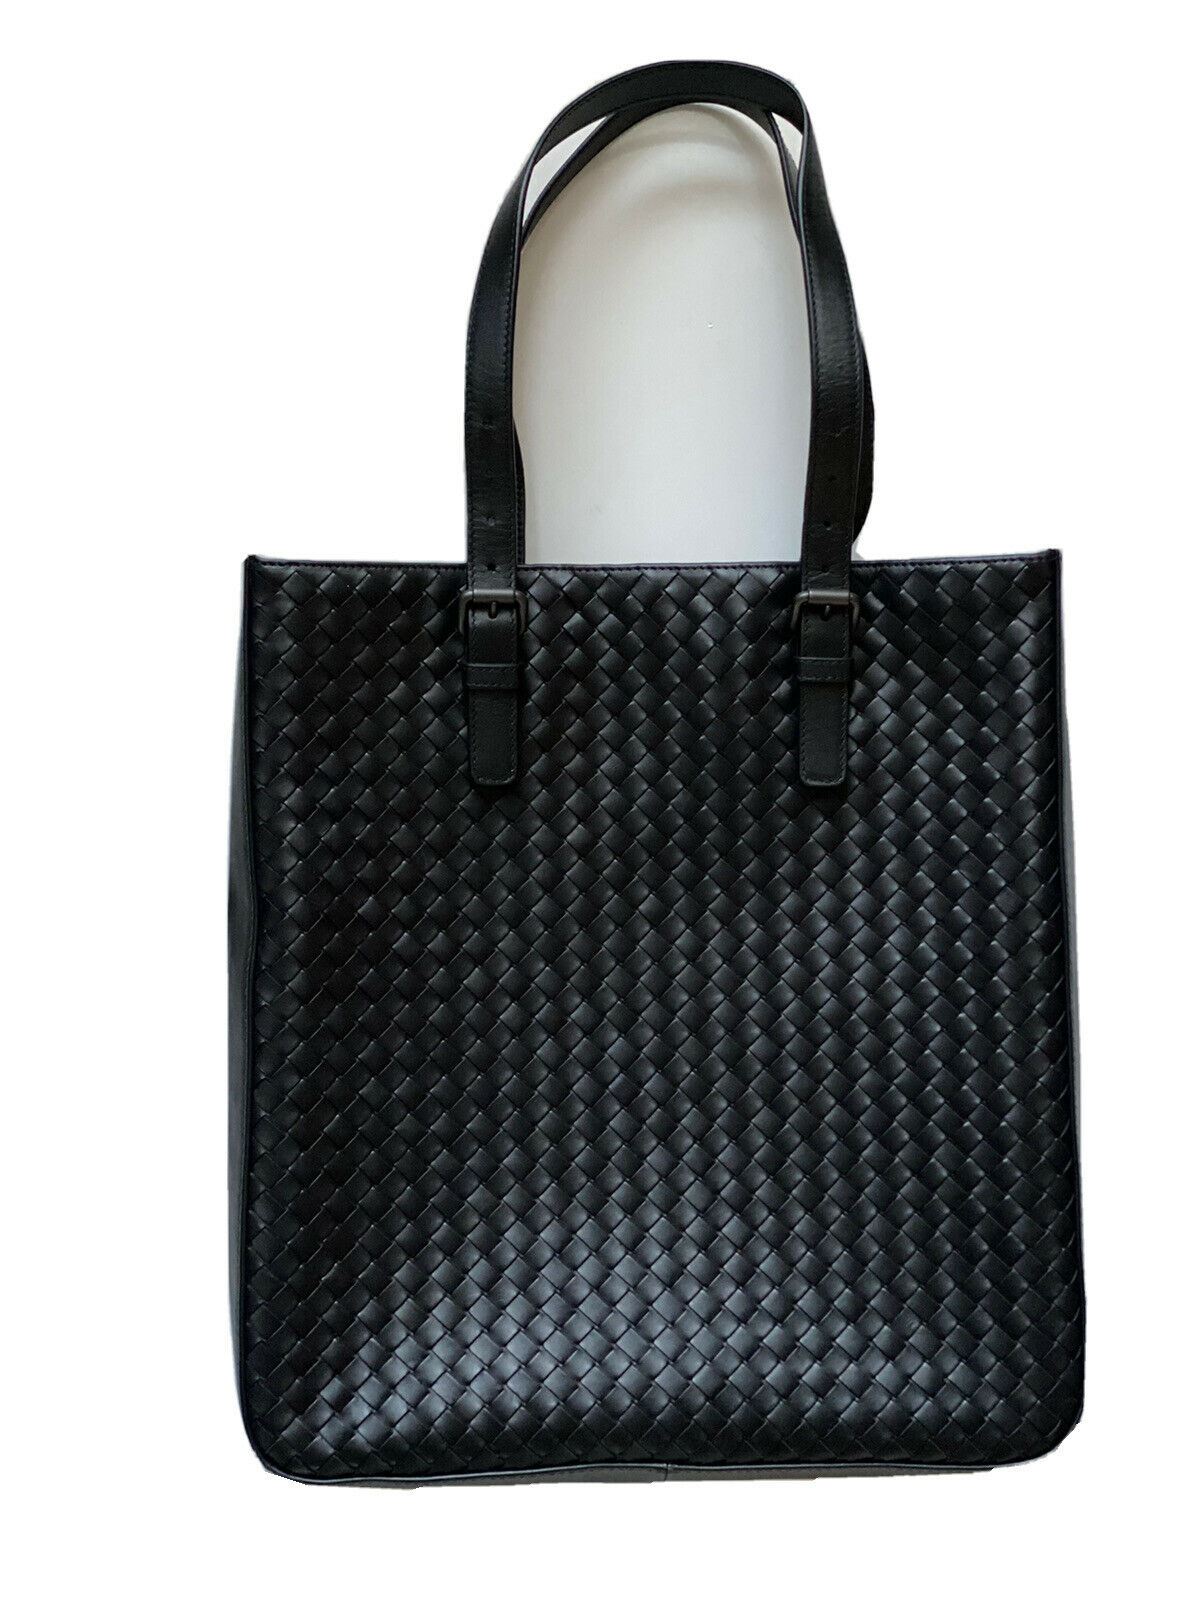 NWT Bottega Veneta Черная кожаная сумка наппа Intrecciato Черная большая сумка, сделано в Италии 